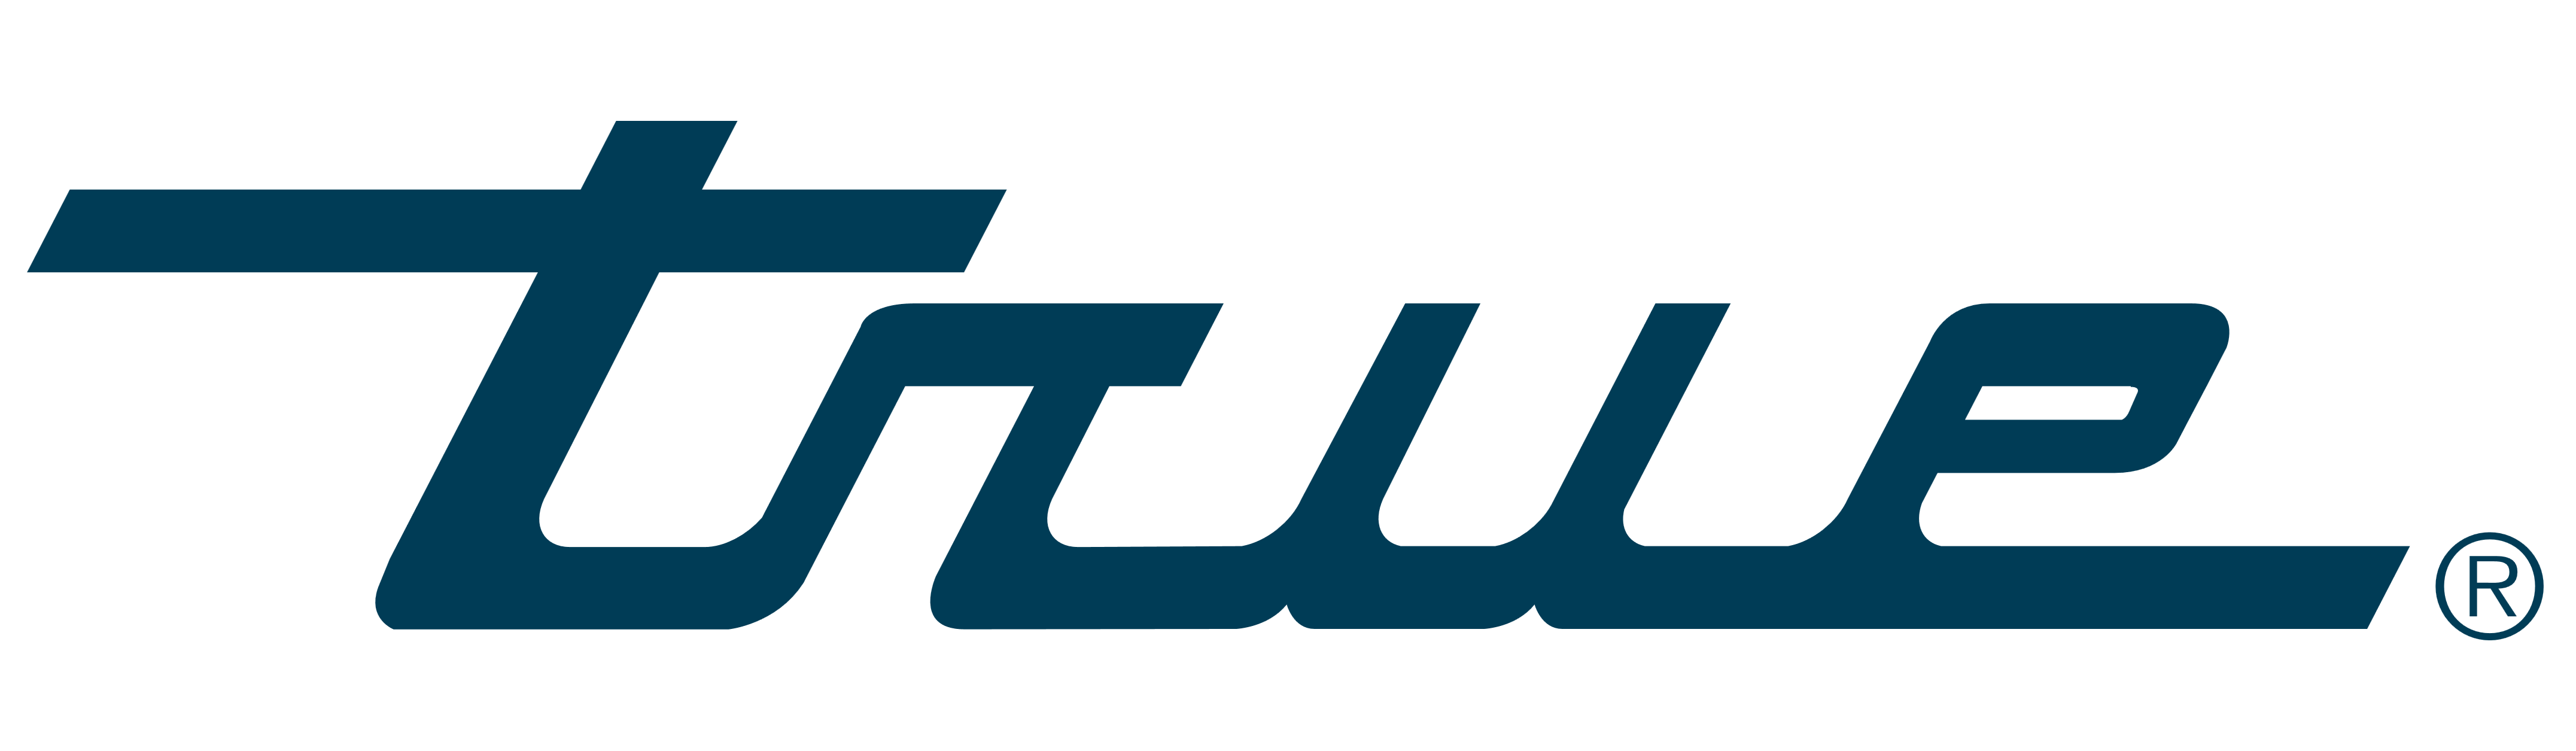 Manufacturing Logo - True Manufacturing – Logos Download